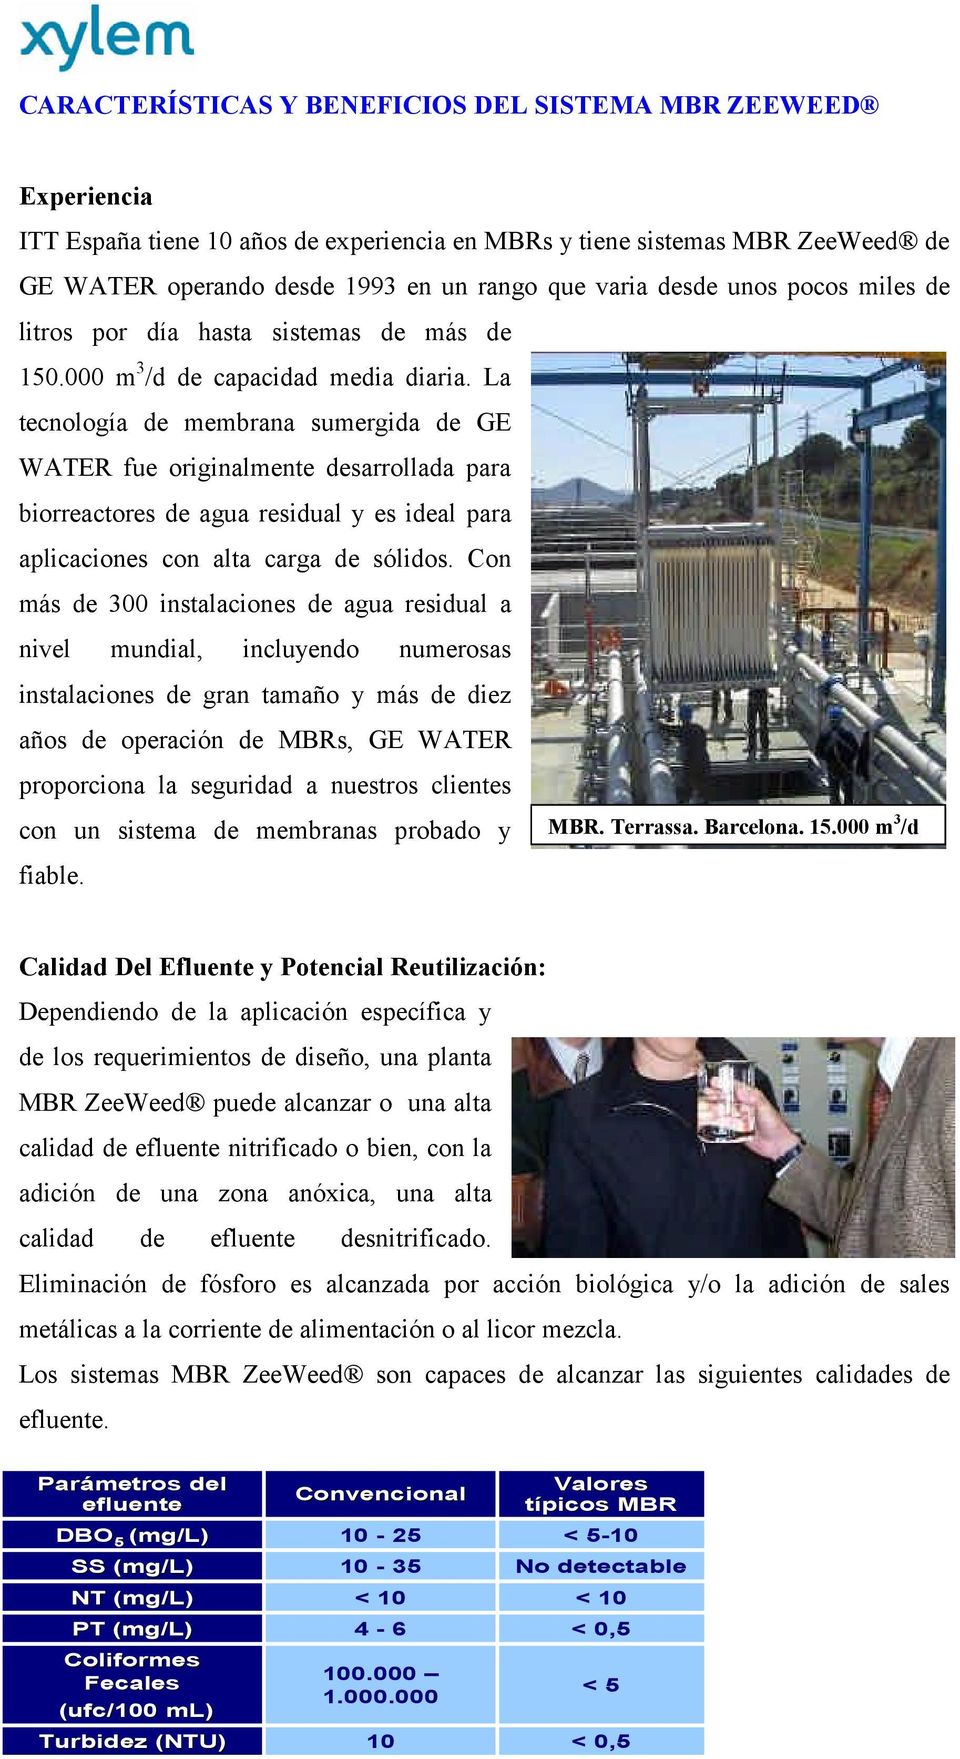 La tecnología de membrana sumergida de GE WATER fue originalmente desarrollada para biorreactores de agua residual y es ideal para aplicaciones con alta carga de sólidos.